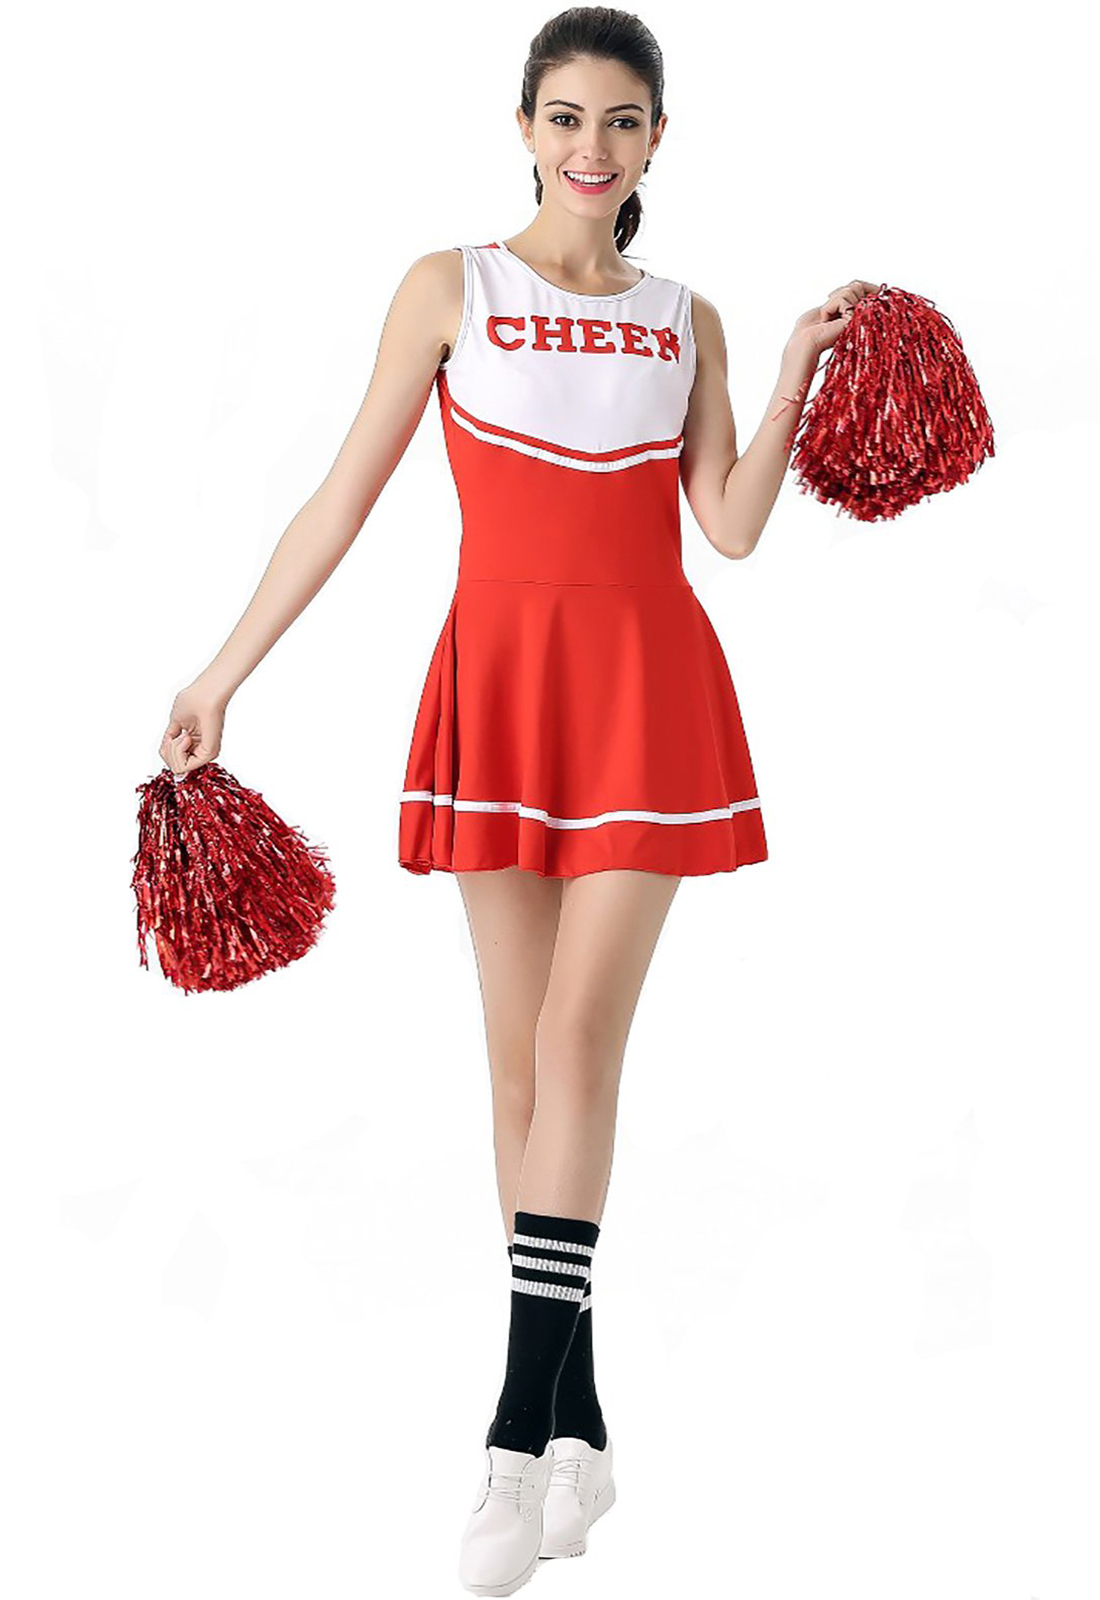 Красный костюм болельщицы, нарядное платье, школьная музыкальная форма черлидинга, без помпонов